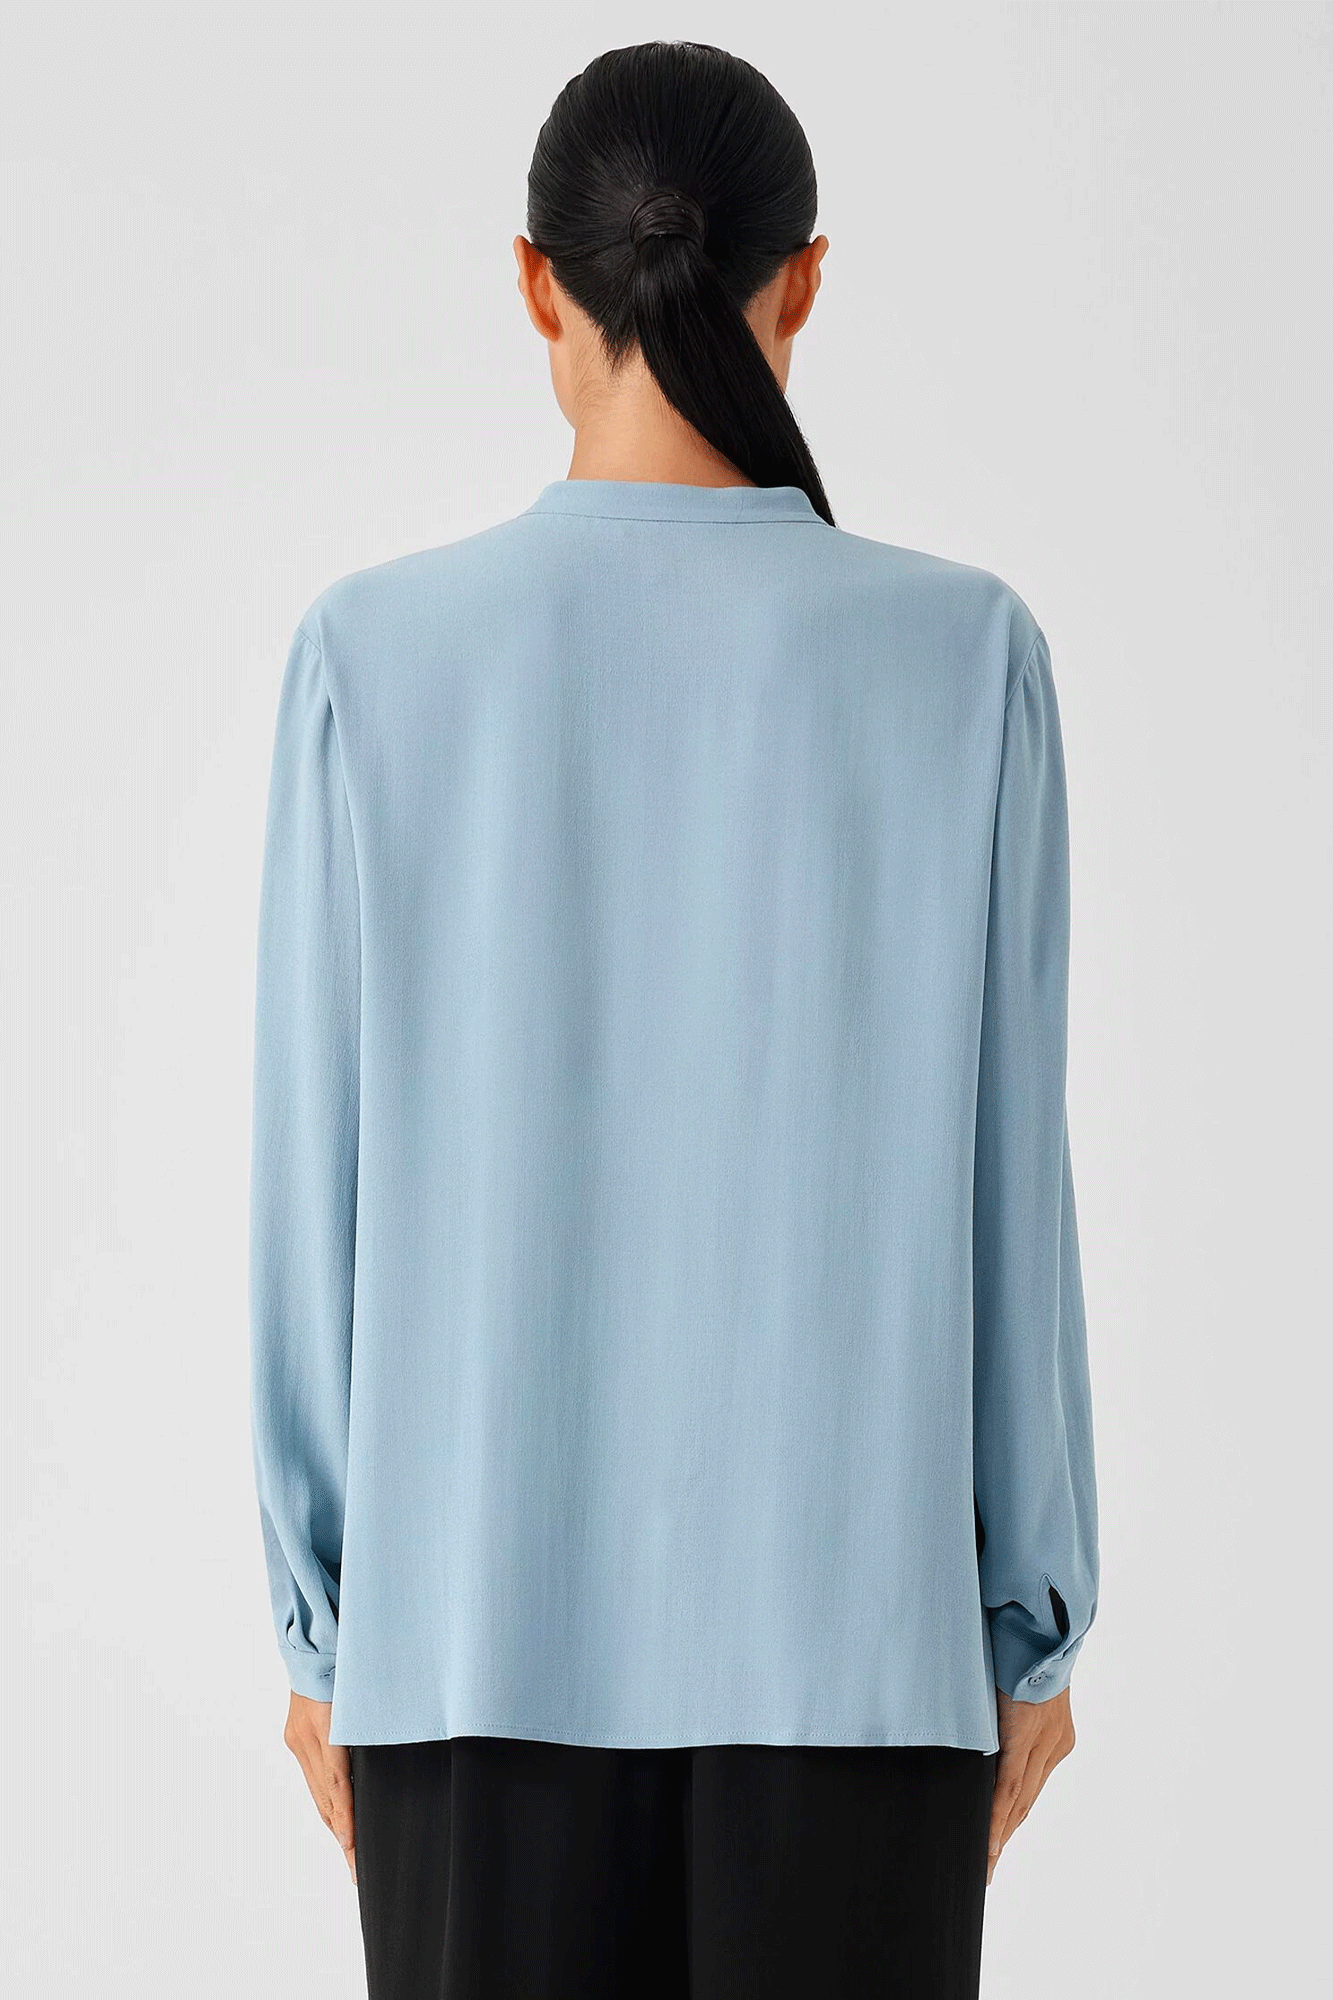 Mandarin Collar Long Shirt - BLST